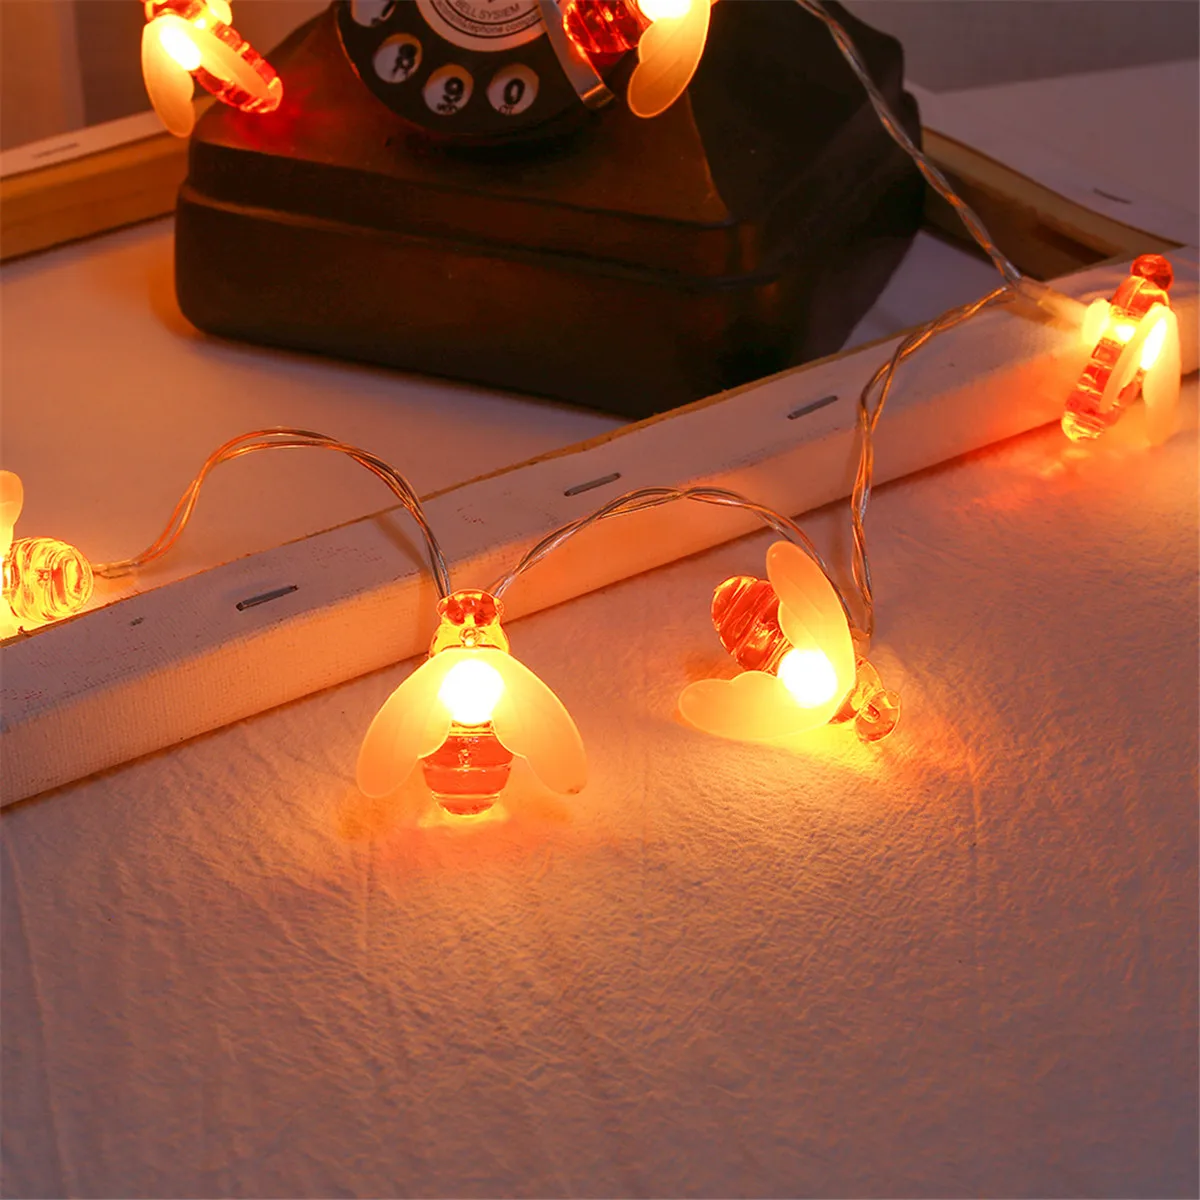 20 светодиодный светильник honey Bee светодиодный светильник USB Мощный светодиодный Сказочный светильник для рождественской вечеринки Открытый водонепроницаемый садовый патио забор освещение беседки